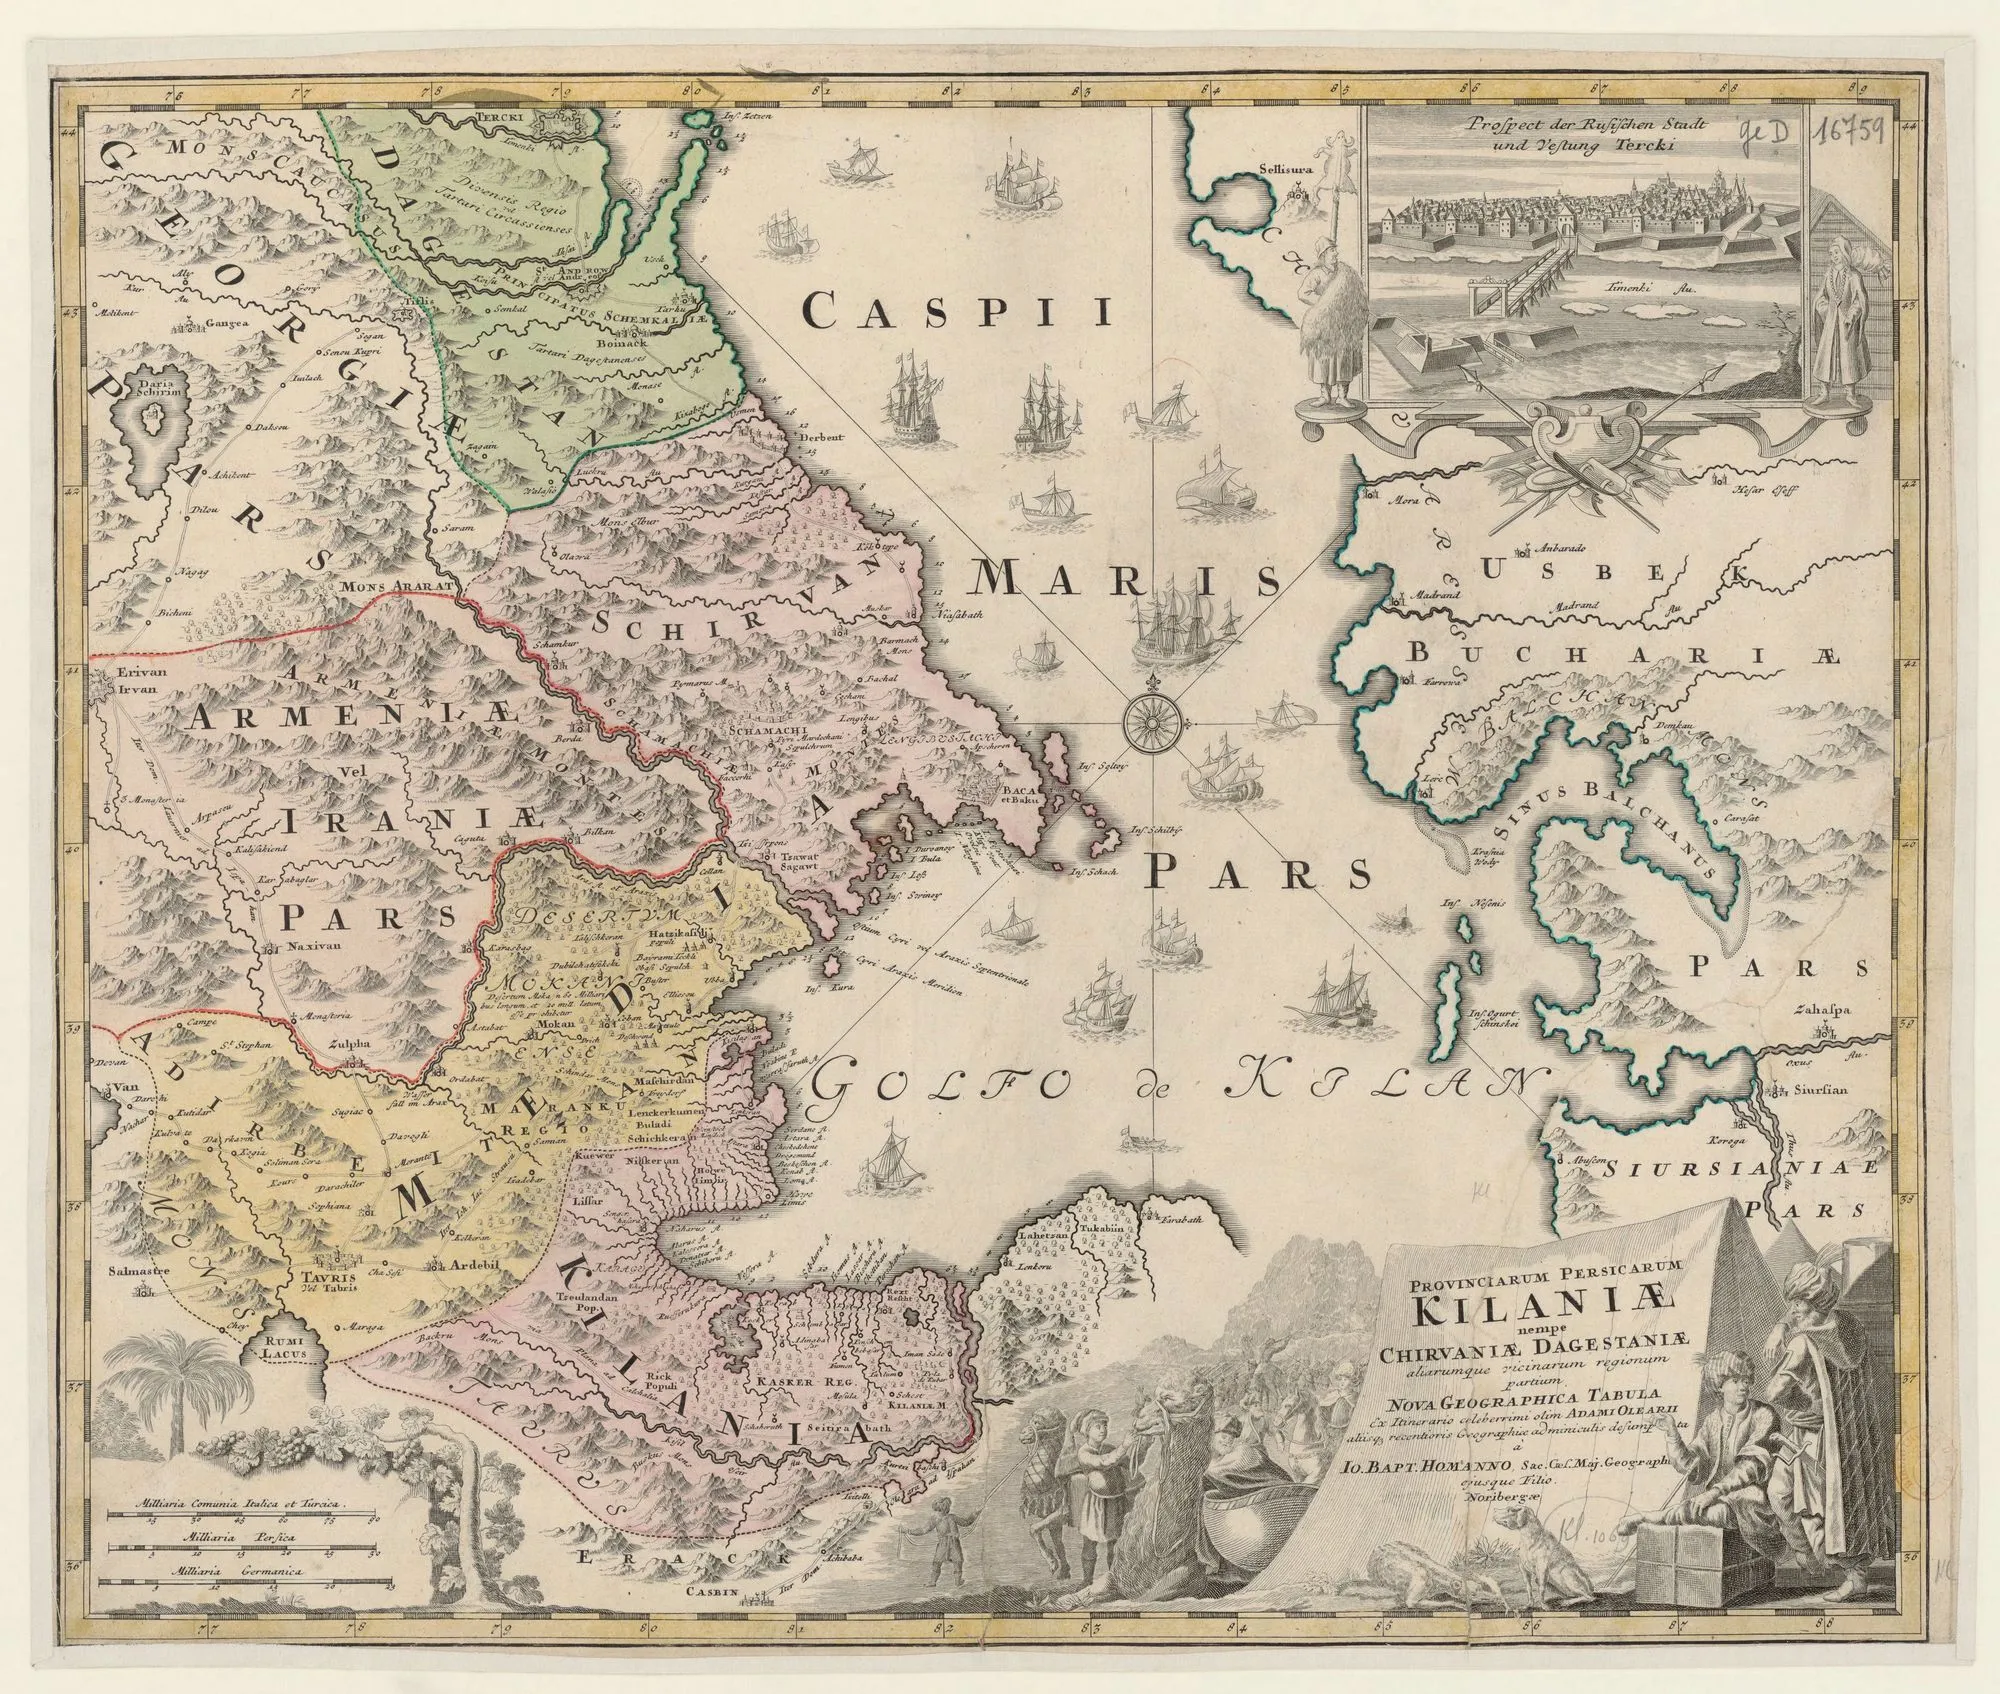 Johann Baptist Homann carte de la mer
Caspienne, du Caucase et du
Turkménistan